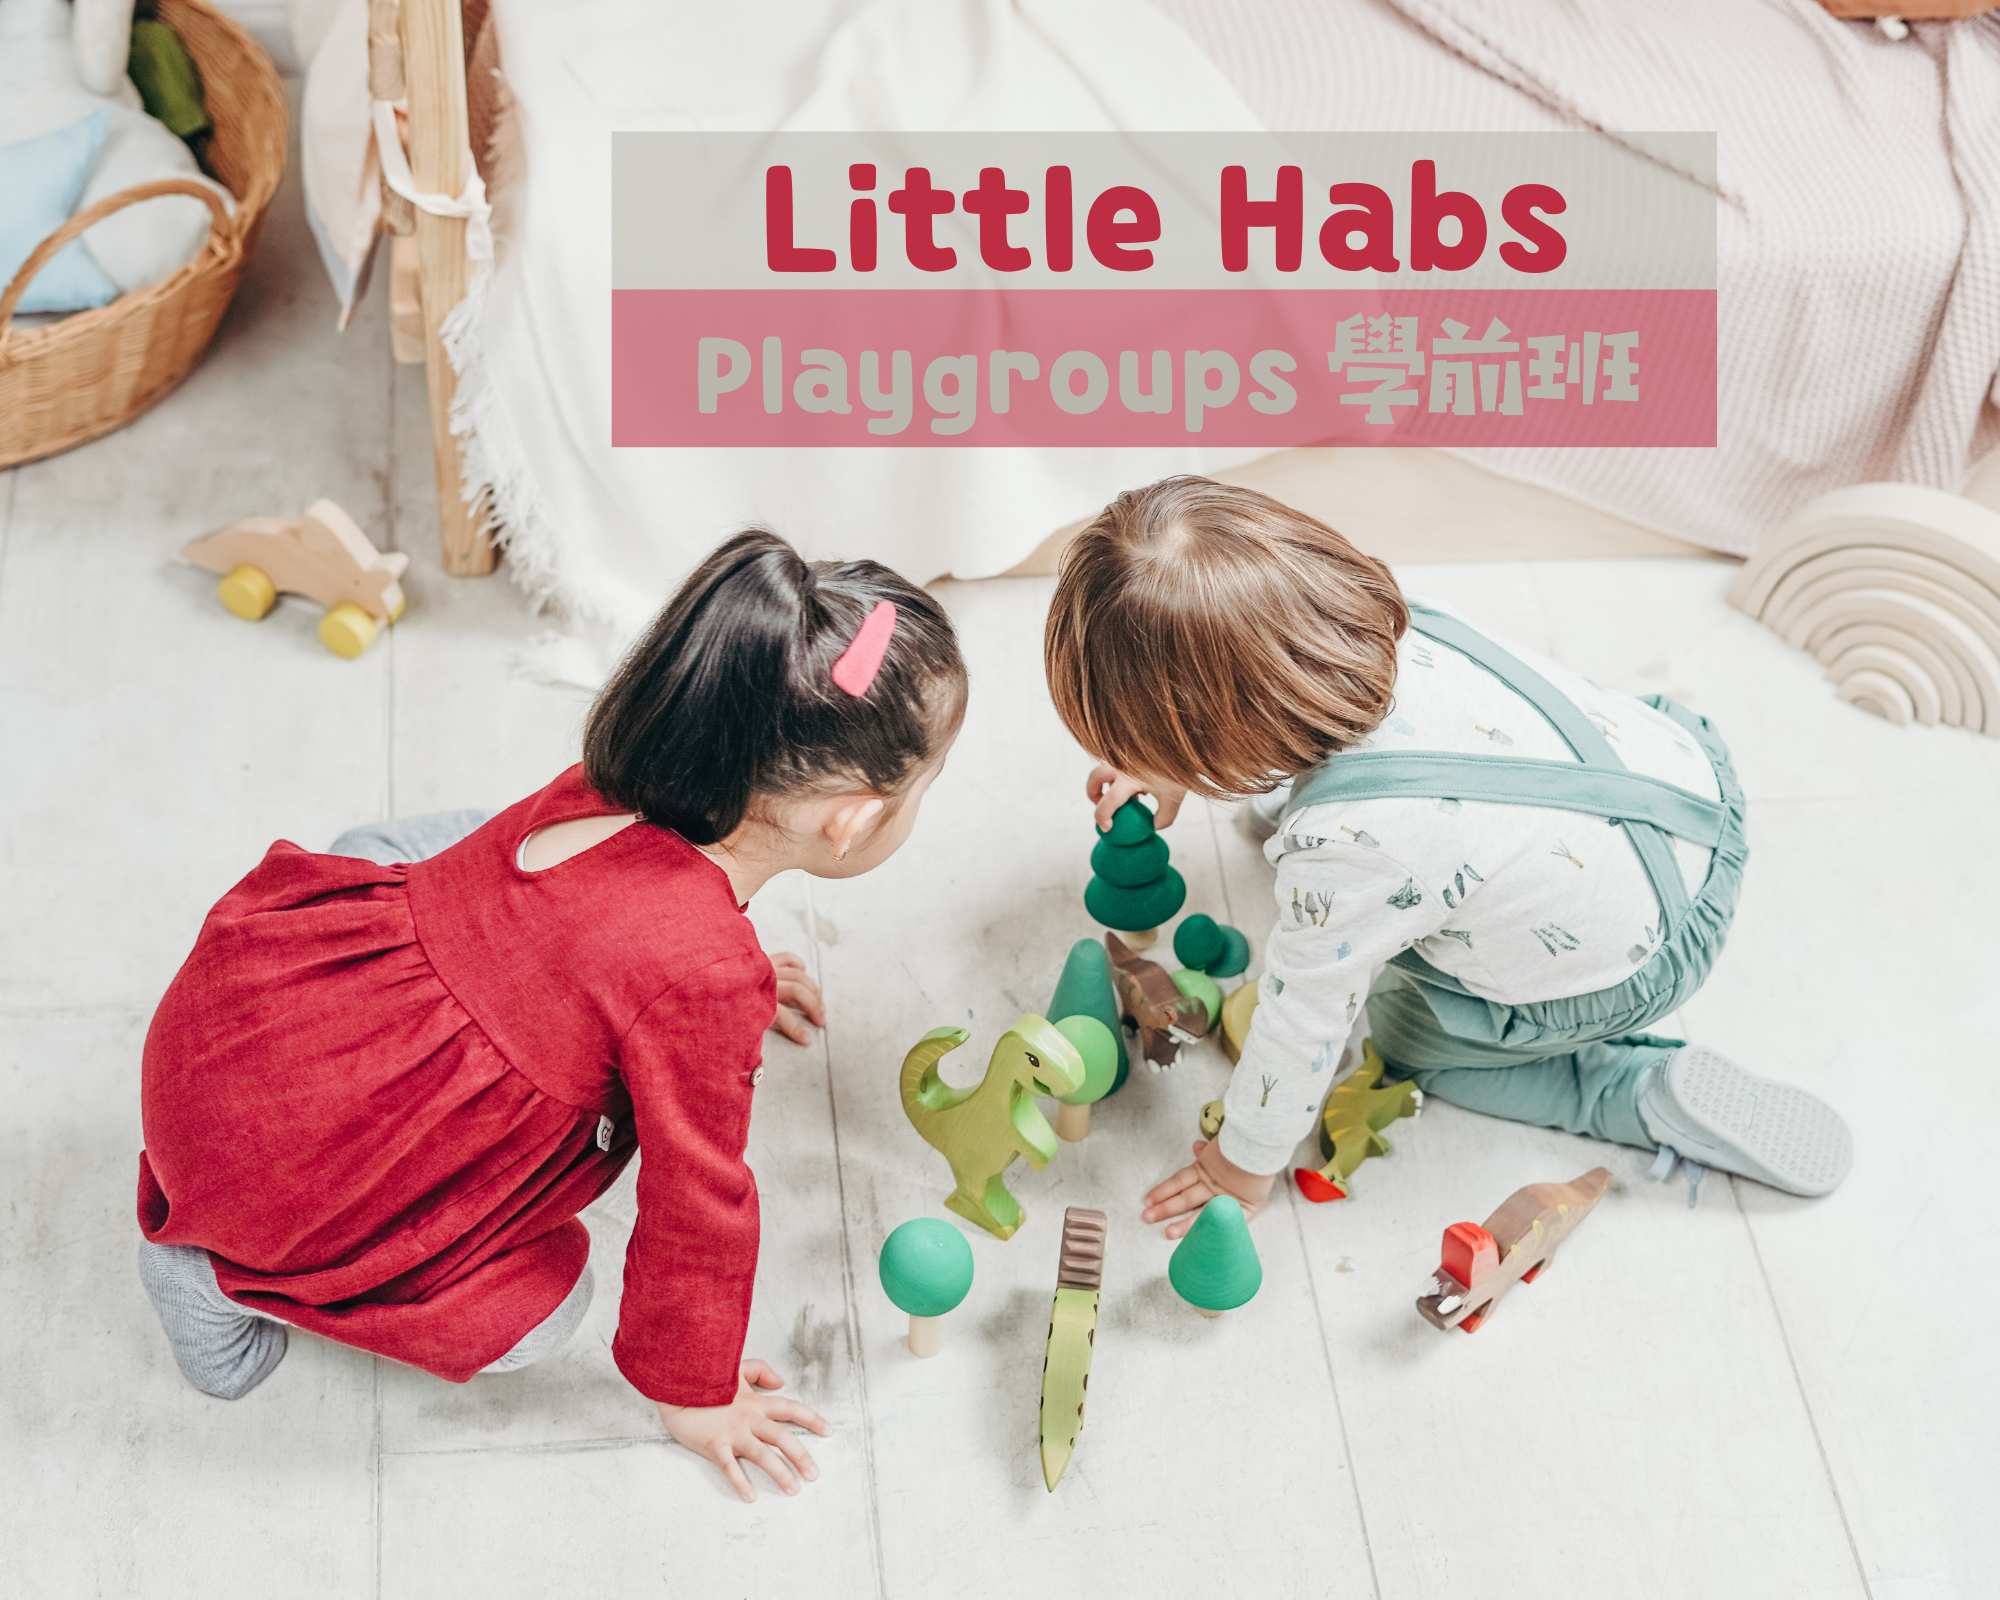 學之園 PLAYGROUP Little habs 學前班分享 (3)